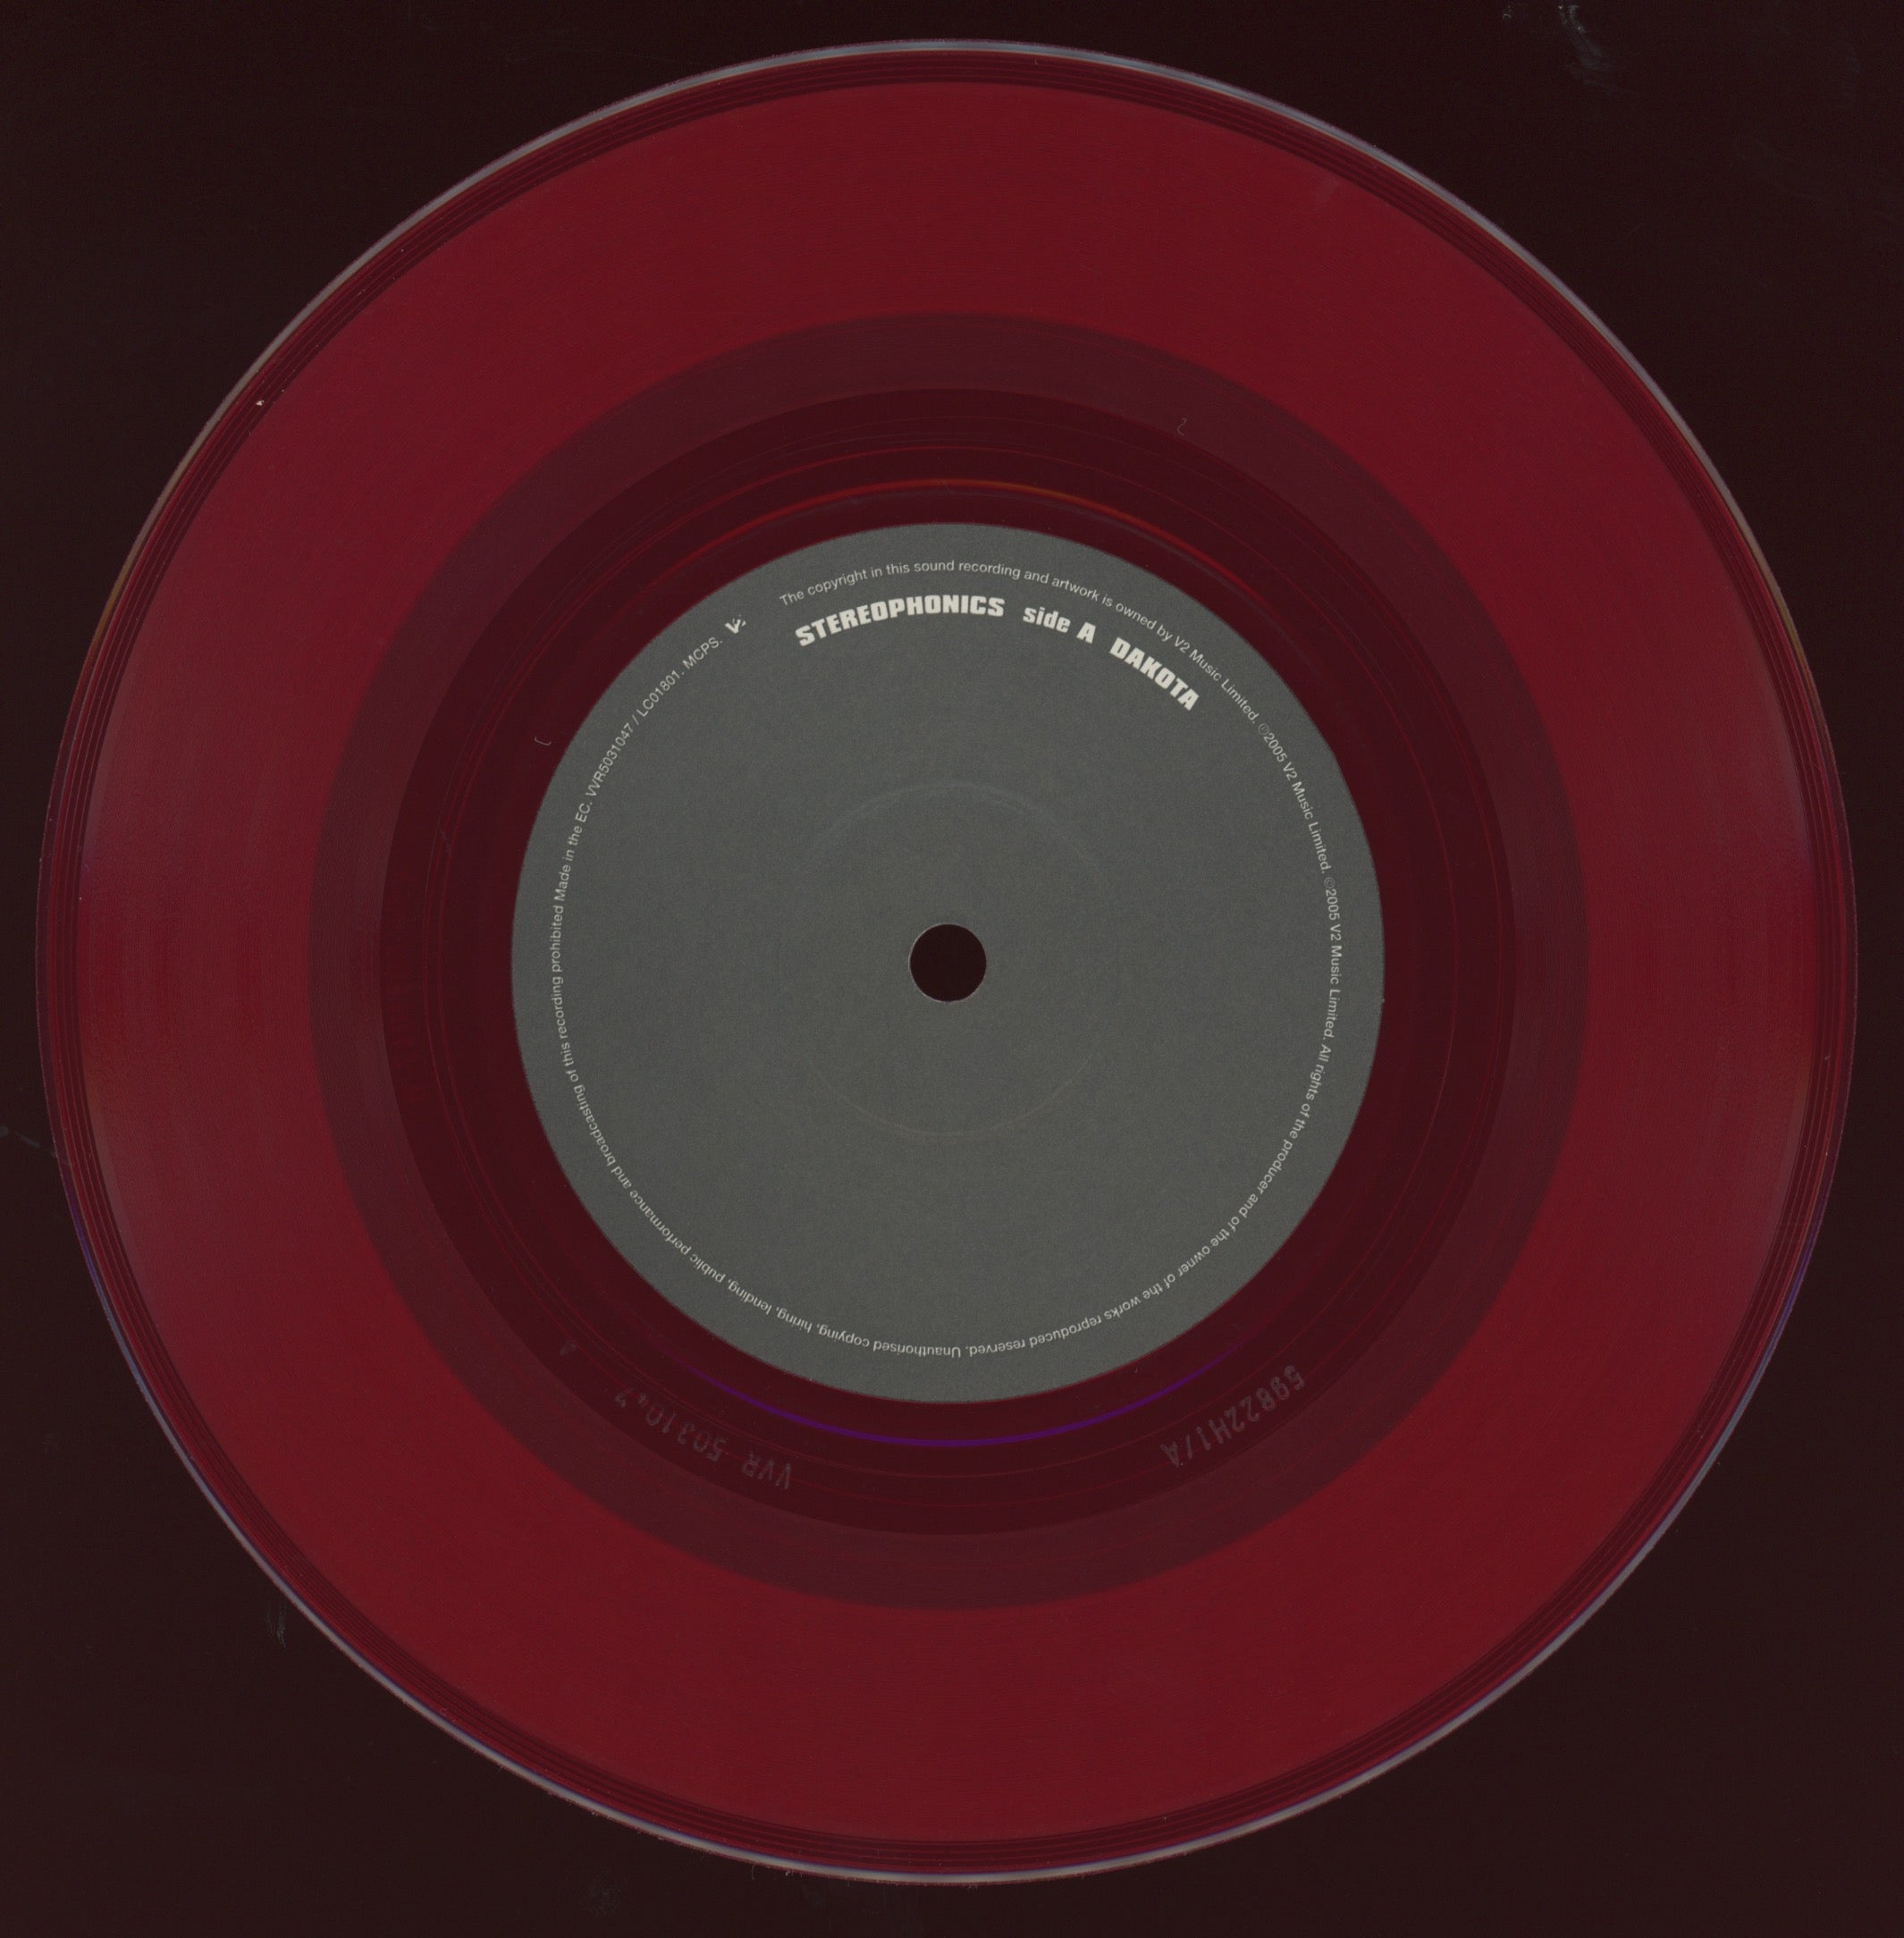 Stereophonics - Dakota on V2 Red Vinyl